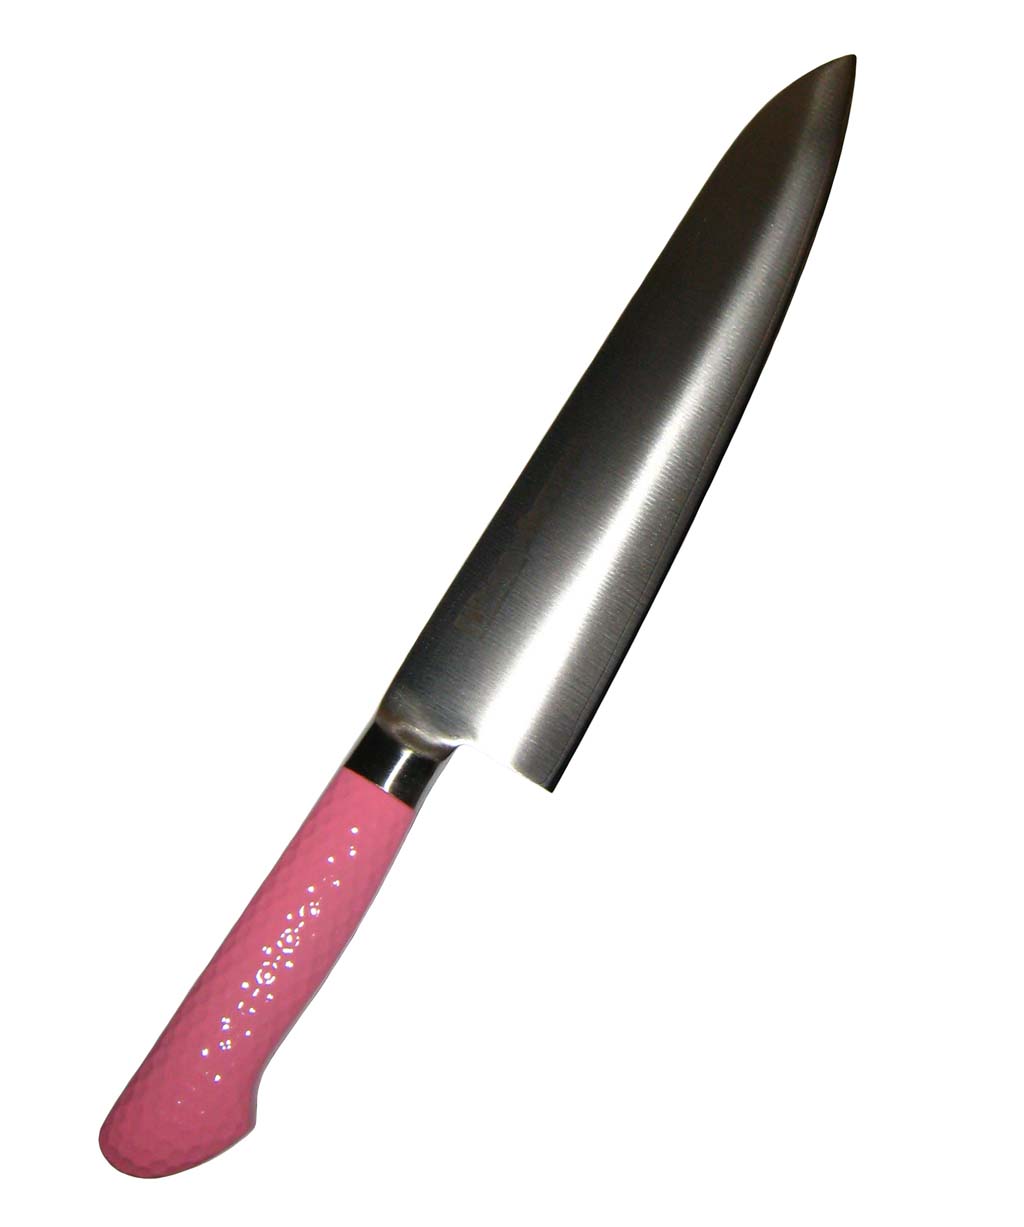 ハセガワ 抗菌カラー庖丁 牛刀 MGK-27 27cm ピンク 業務用 6606320-